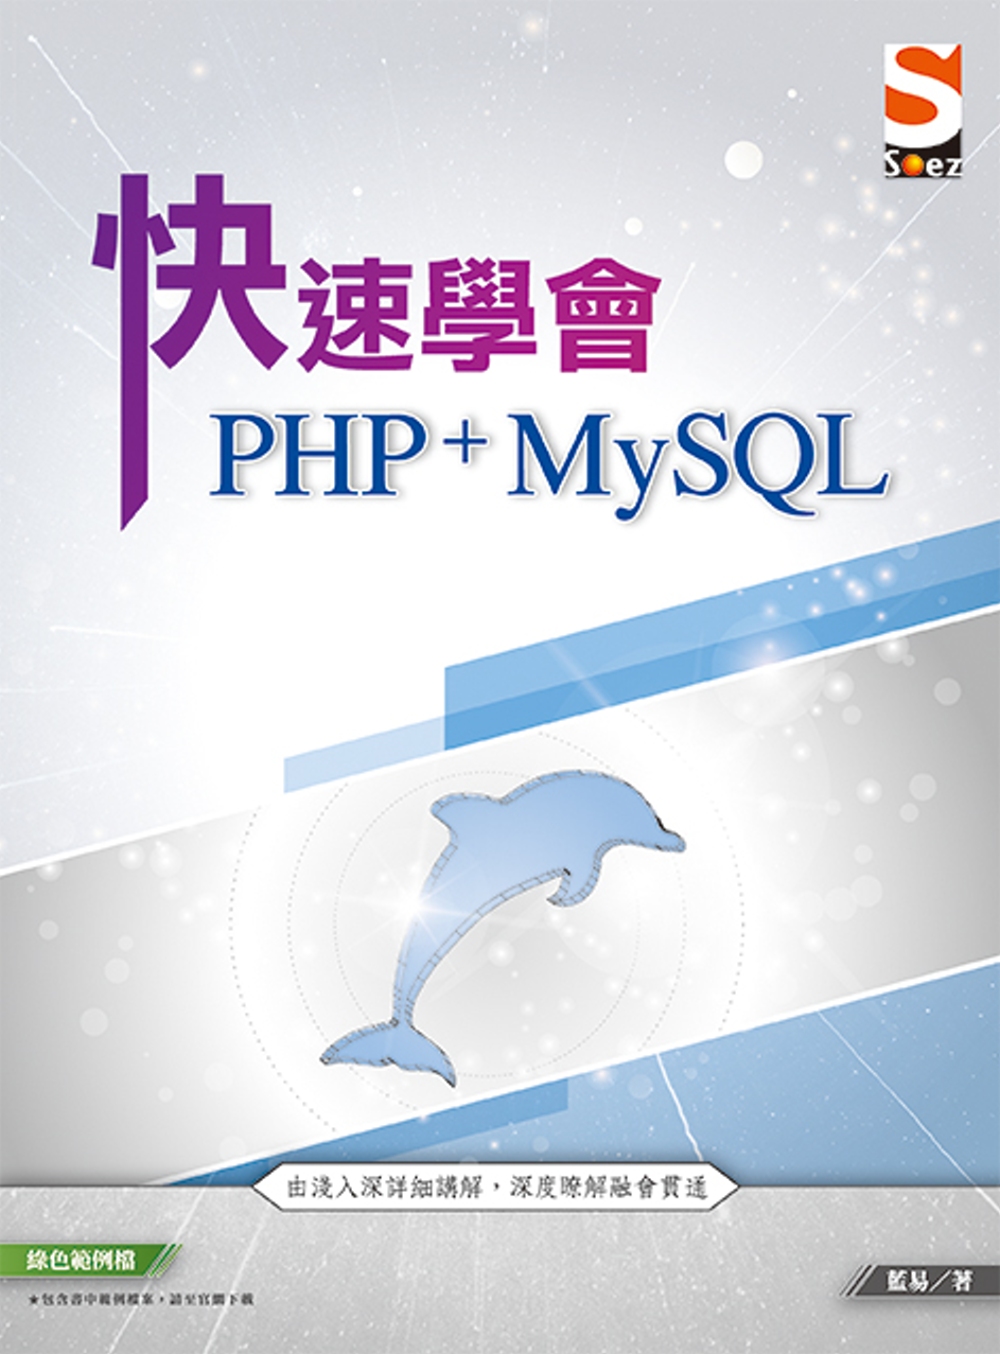 快速學會 PHP & MySQL